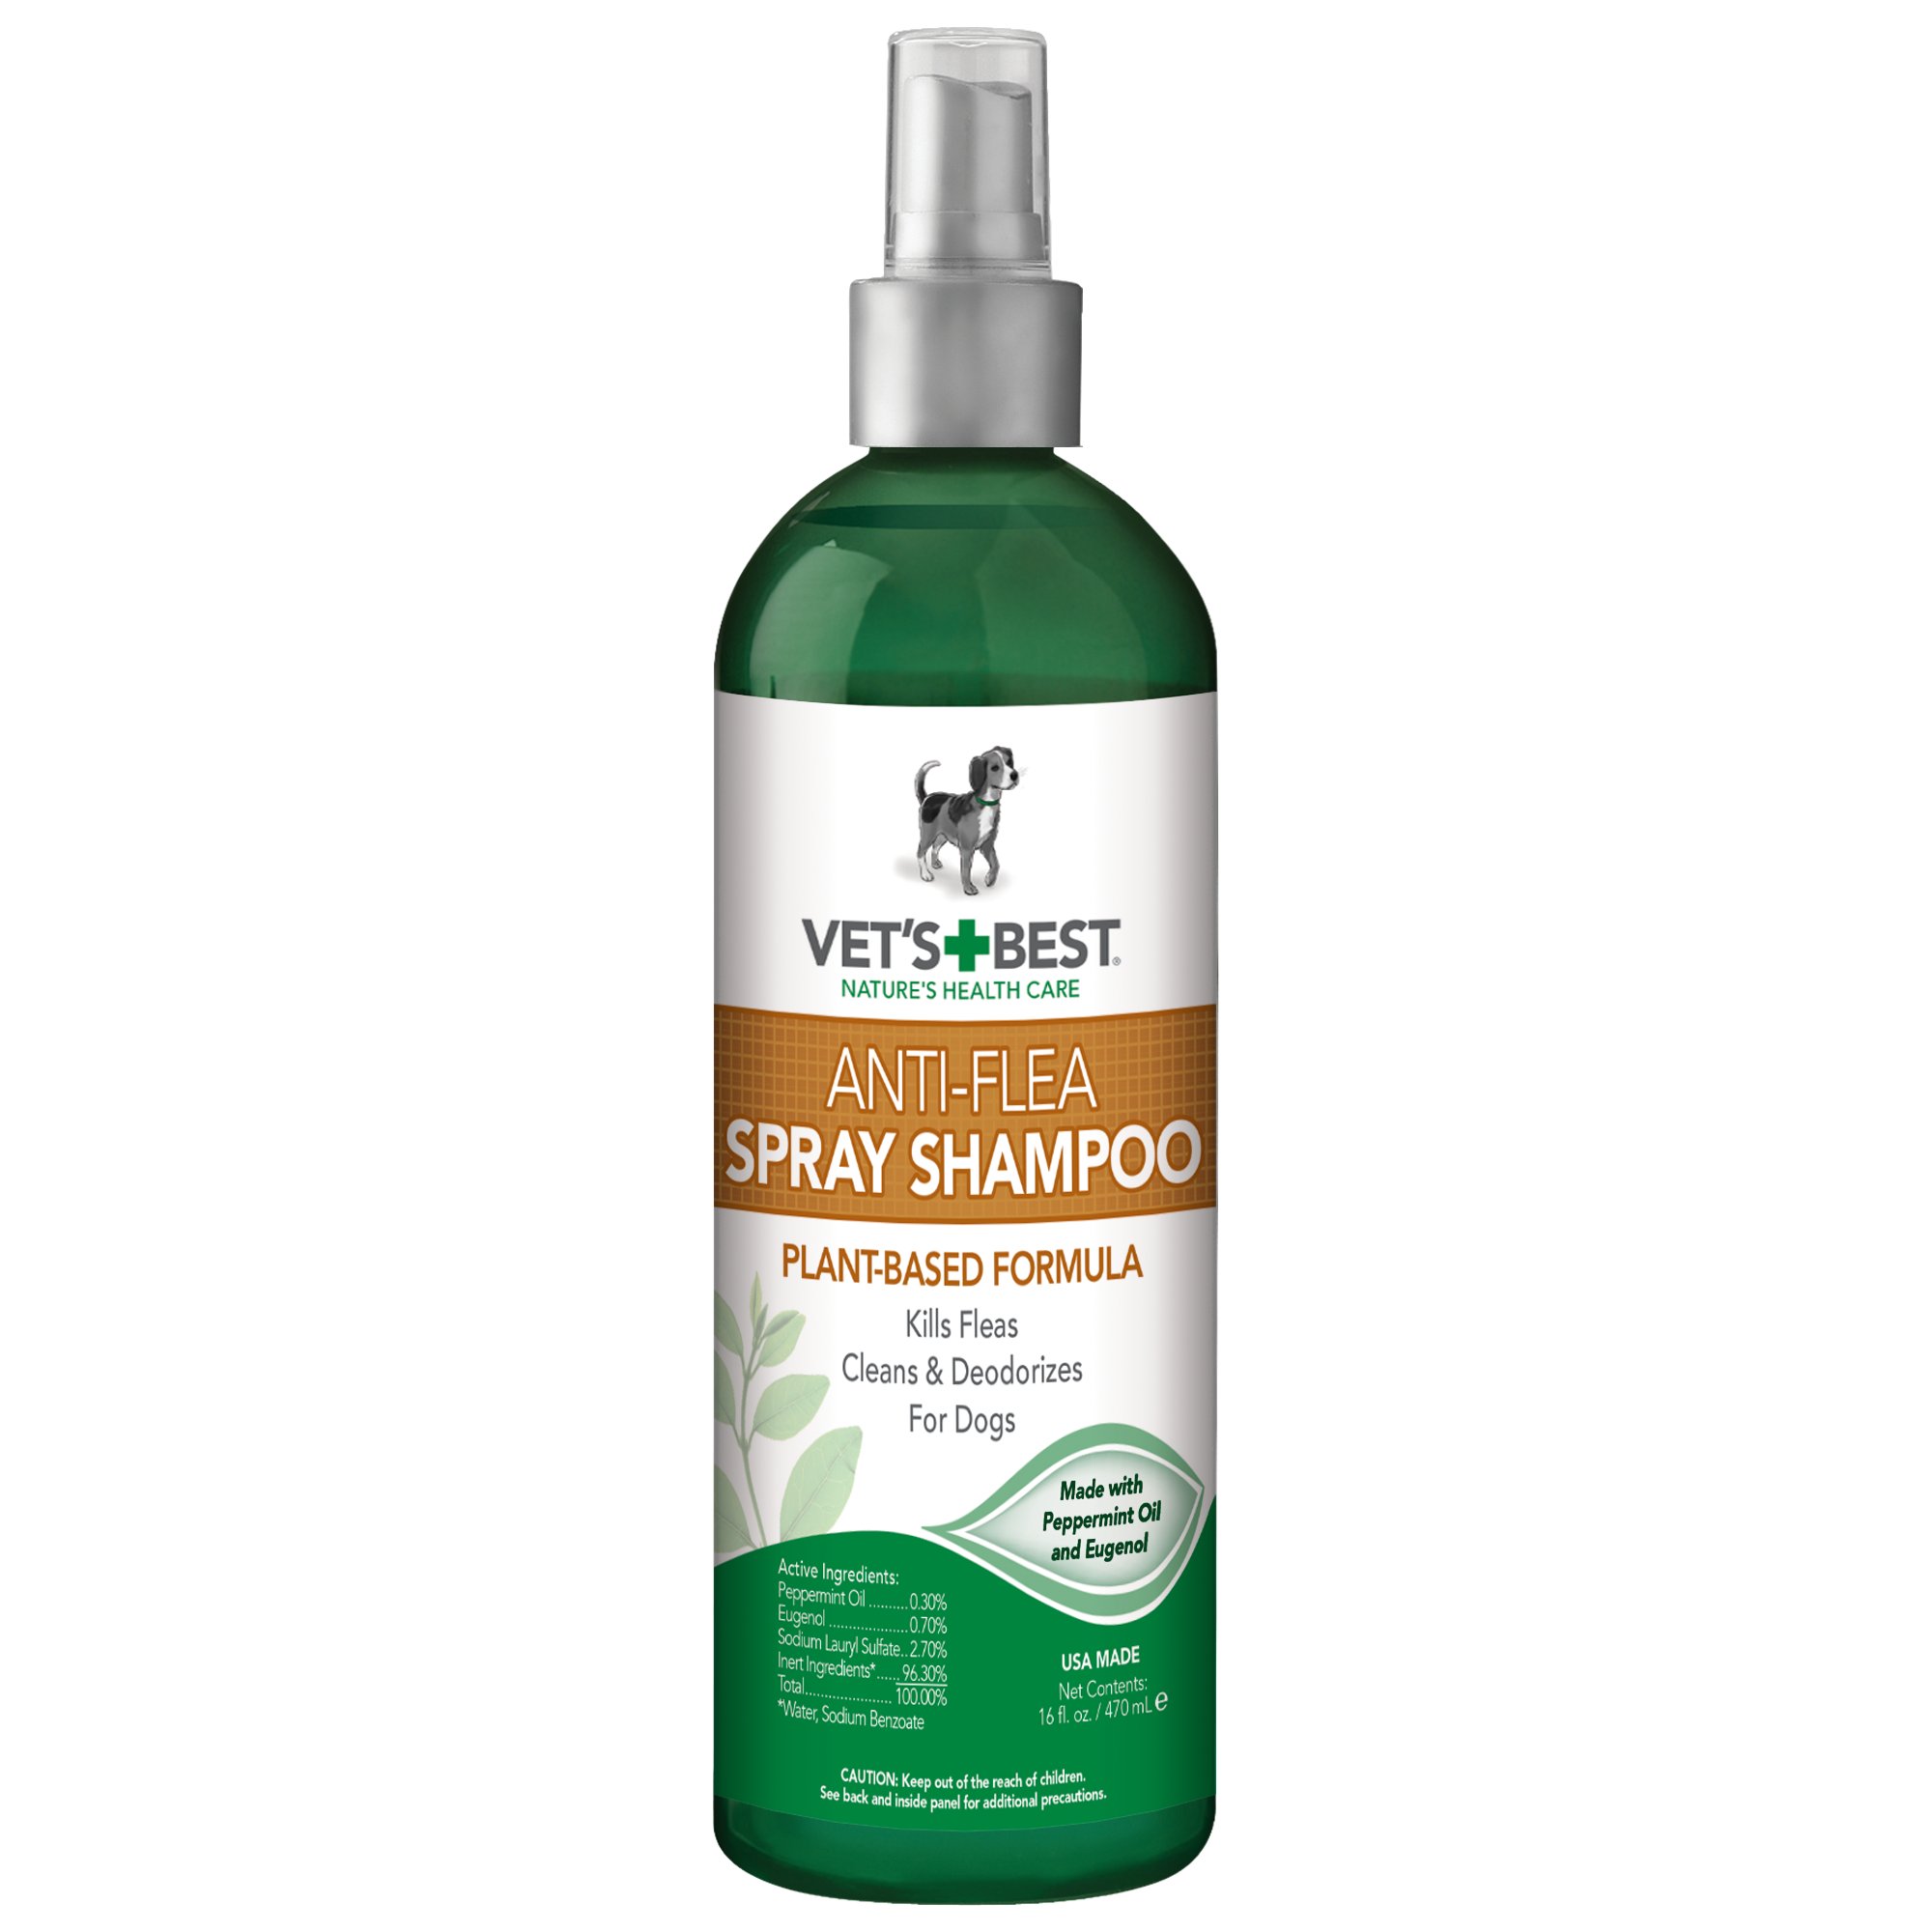 vet's best shampoo for dogs